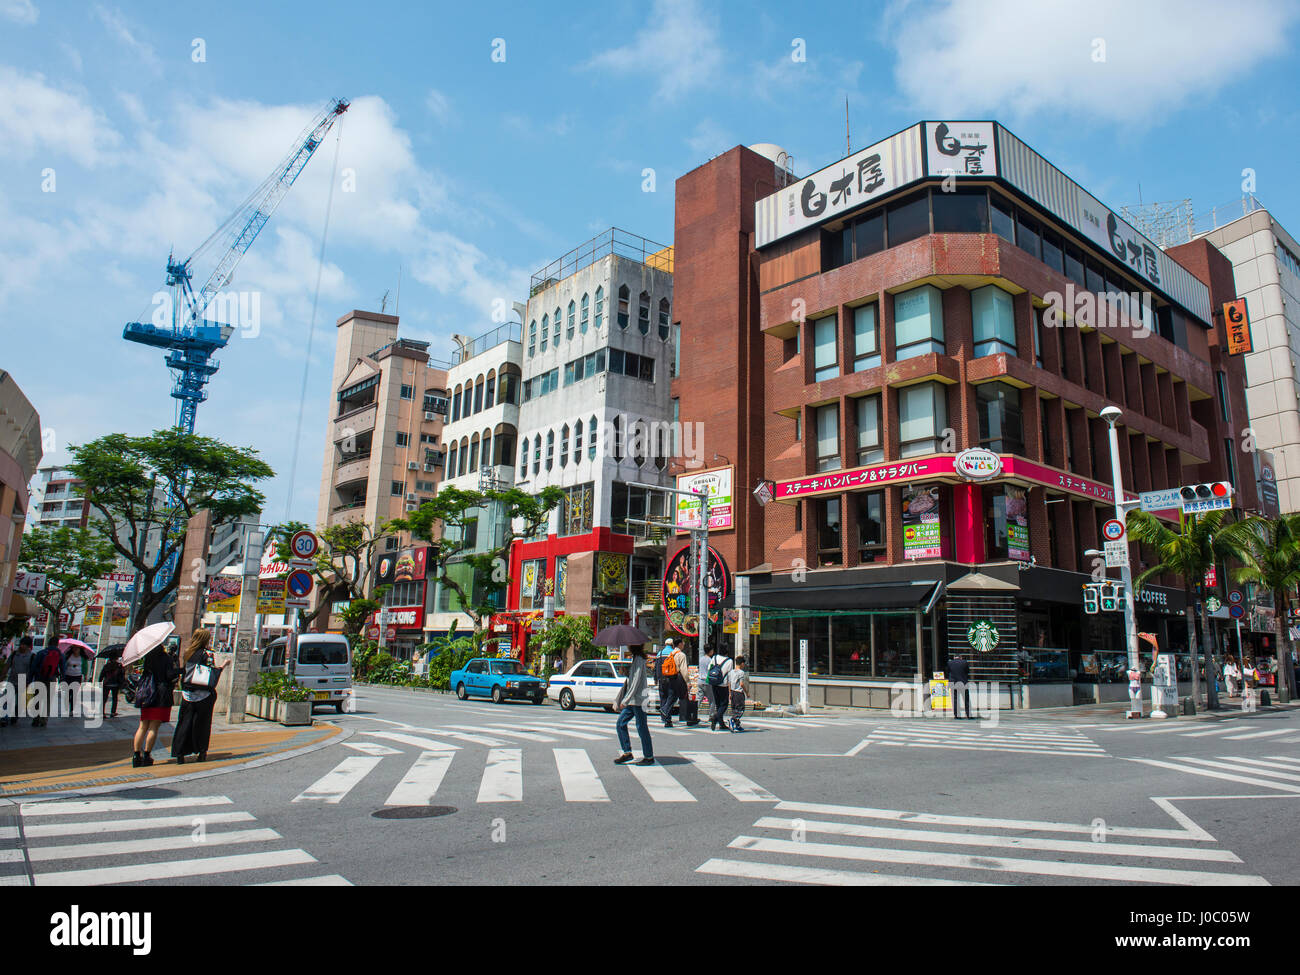 El distrito de negocios, Naha, Okinawa, Japón, Asia Foto de stock